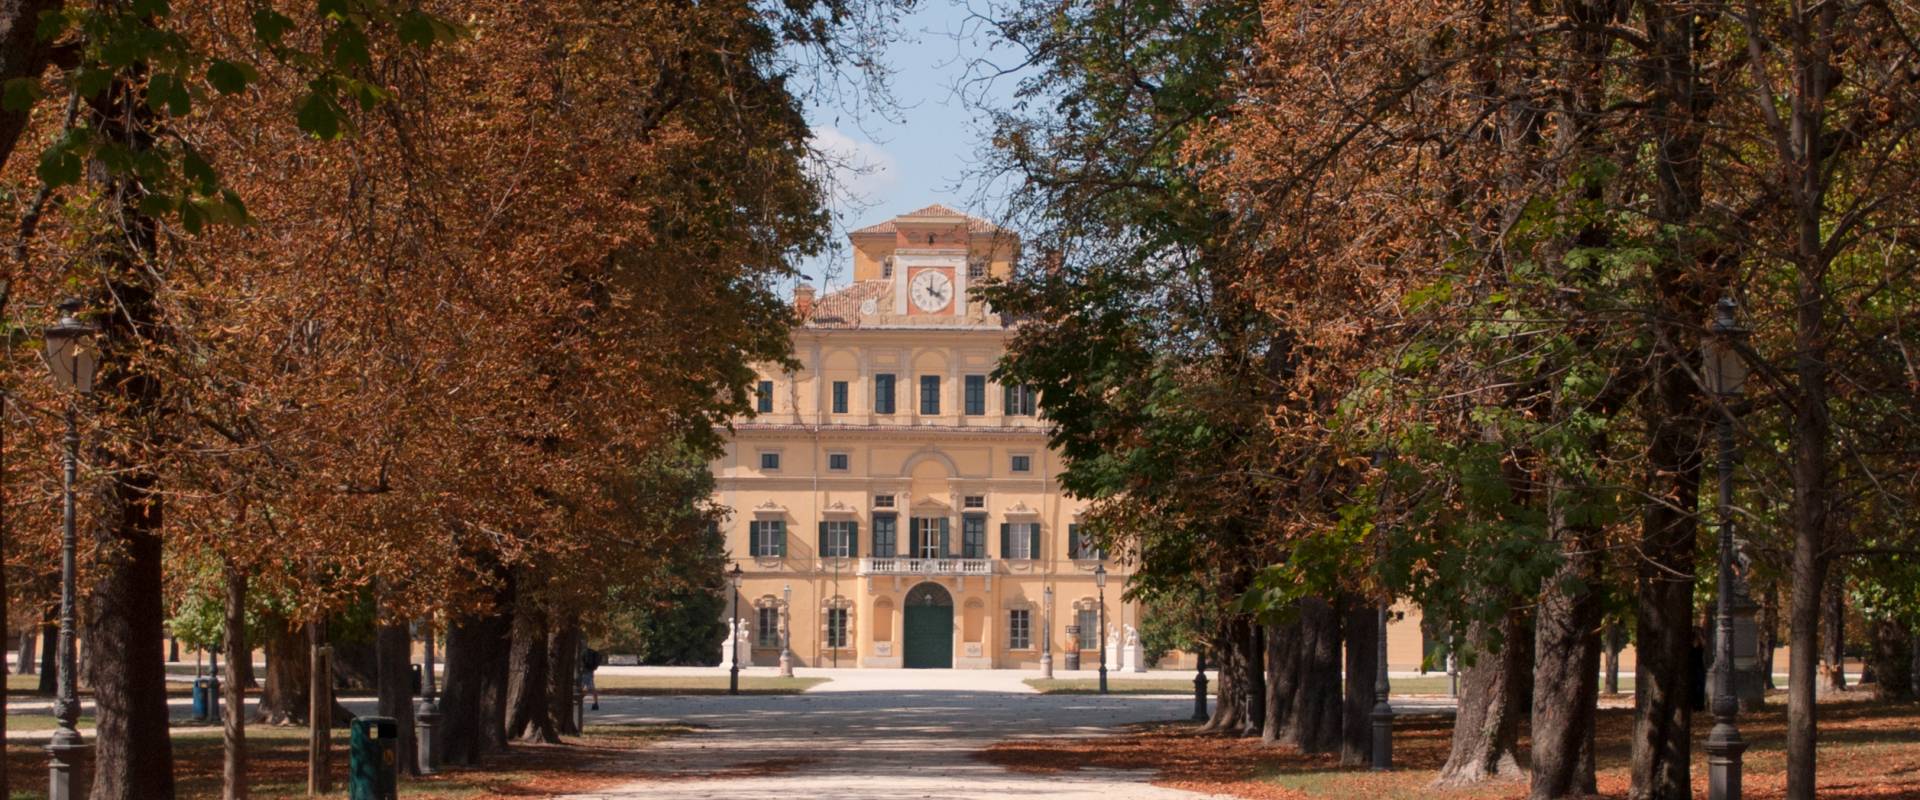 Parco Ducale - Viale e vista del Palazzo Ducale foto di Diego Matarangolo